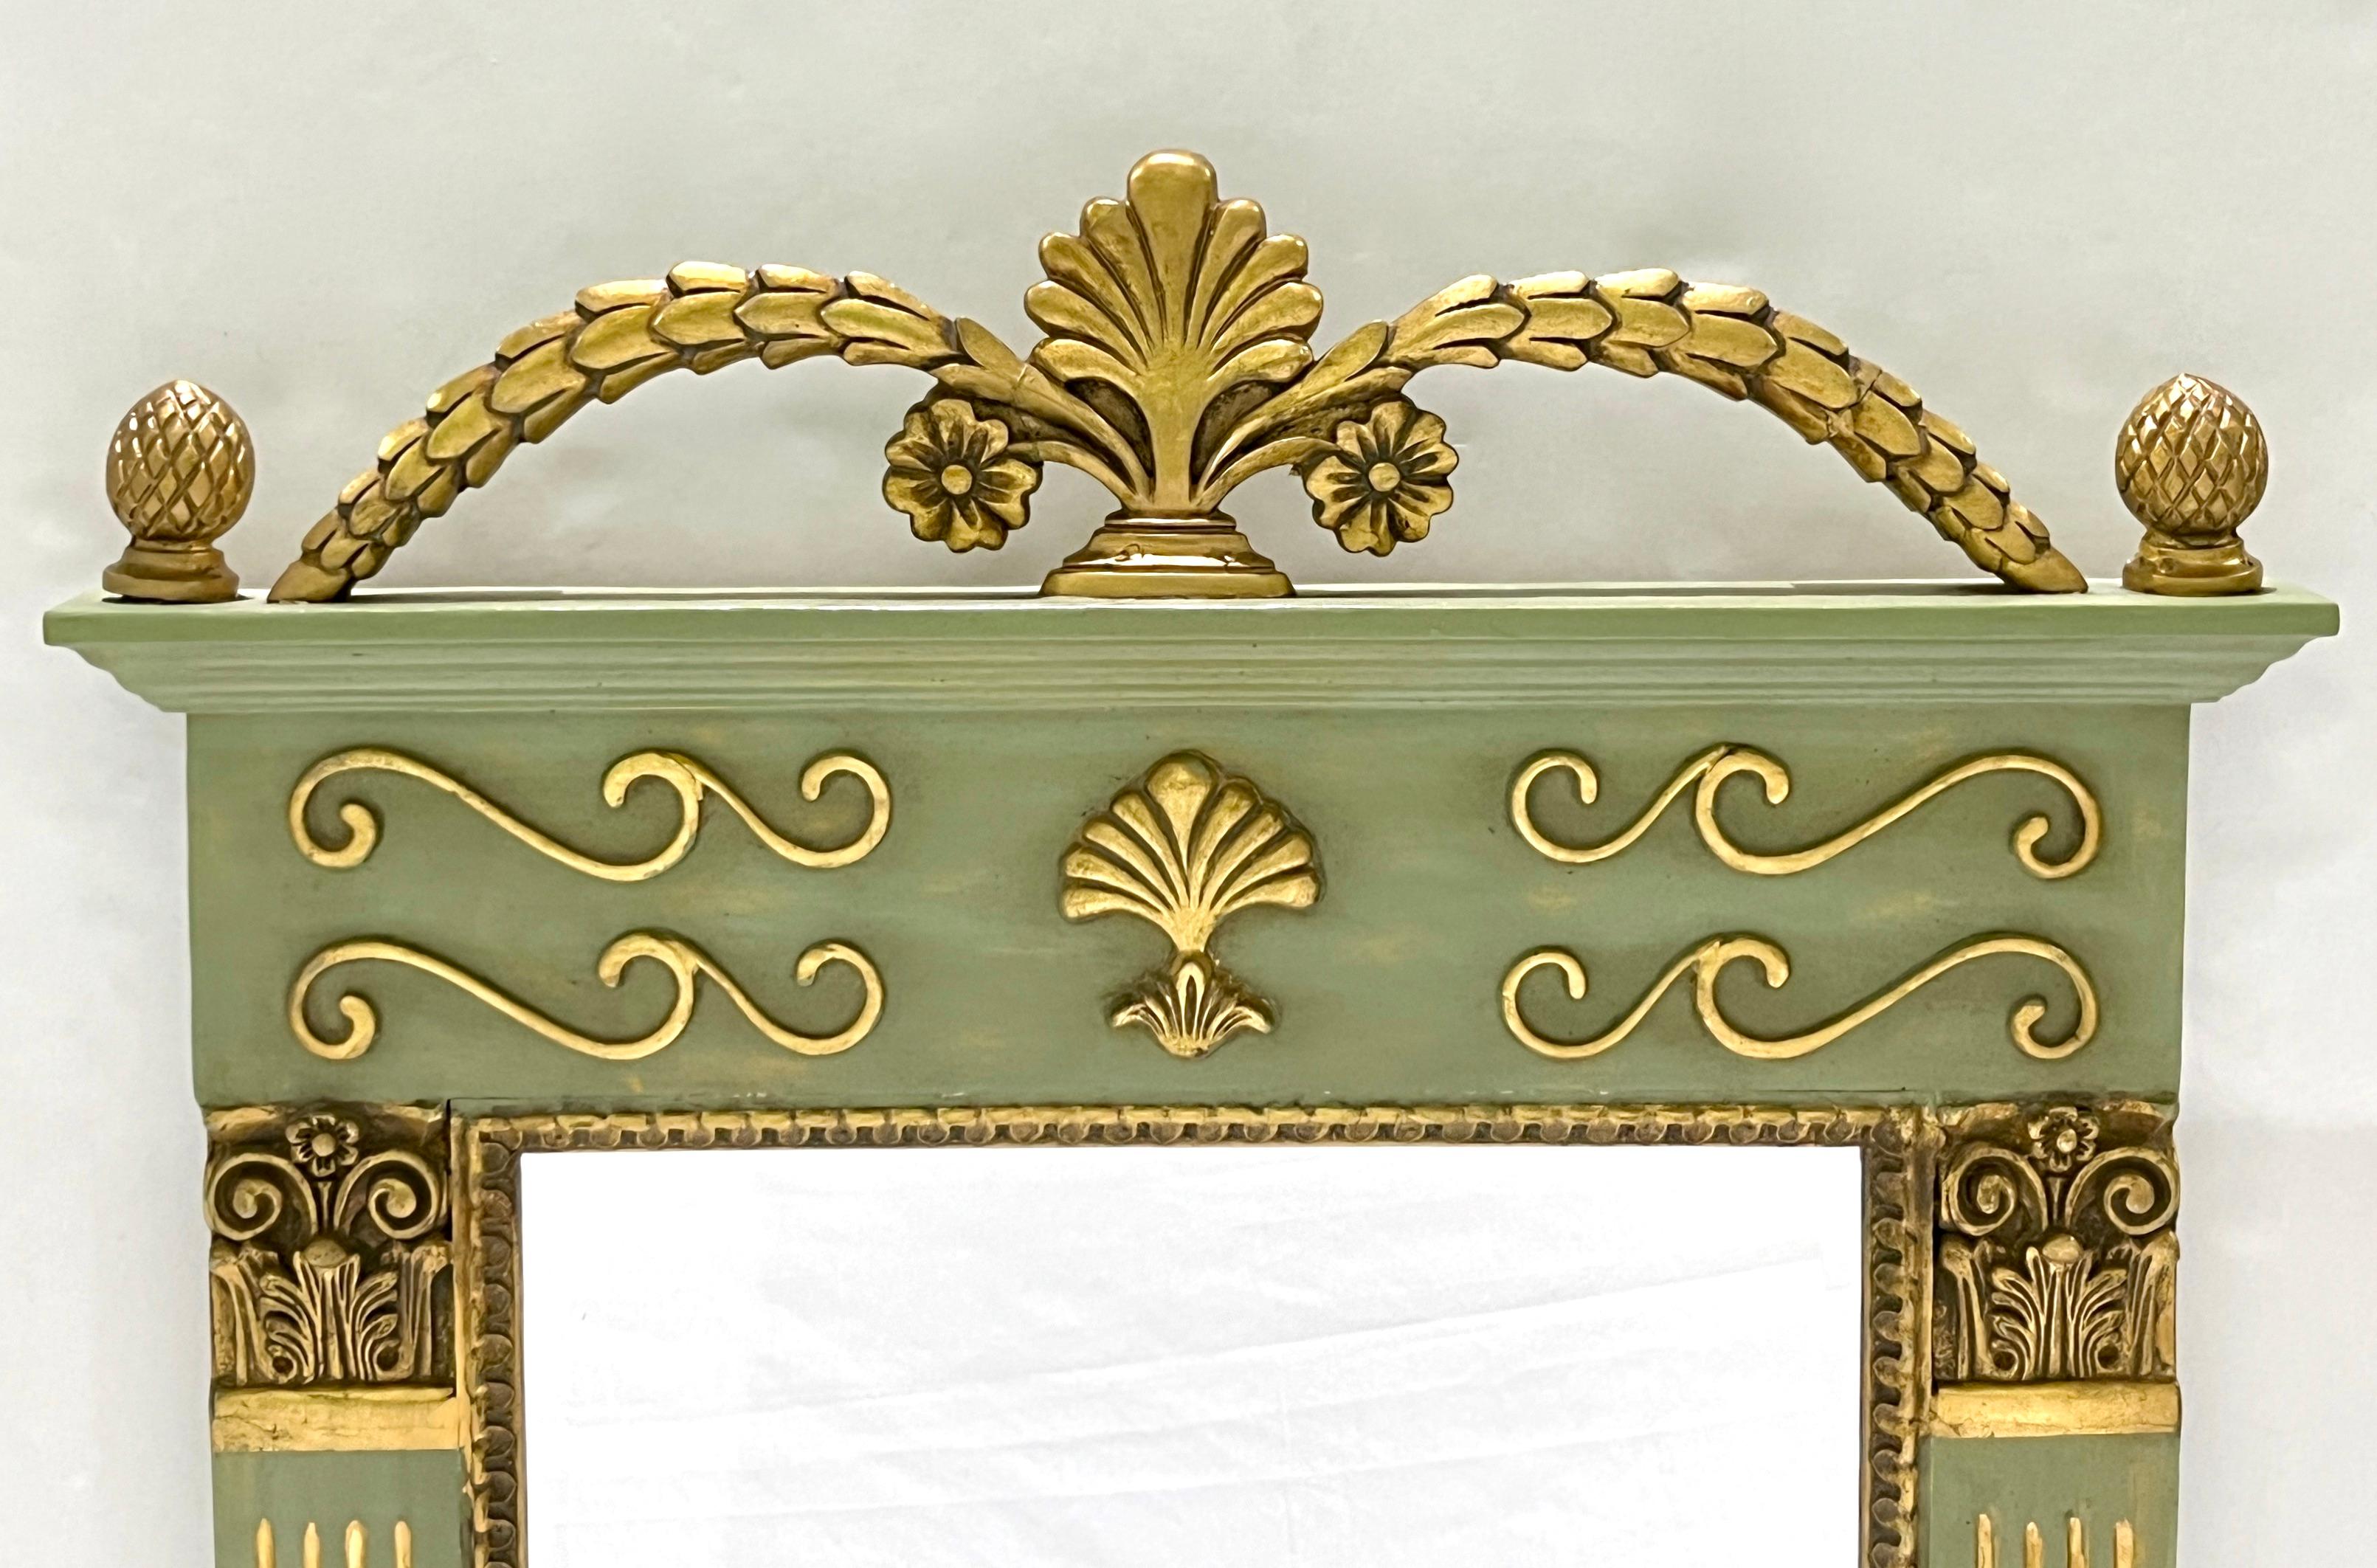 Eine Mitte des 20. Jahrhunderts moderne Französisch dekorativen bemalten Holz trumeau Spiegel, in einem Empire-Revival-Design, in einem Napoleon Apfel Moos grün lackiert, mit umfangreichen Gold Akzente und dekorative Schnitzereien: geriffelte